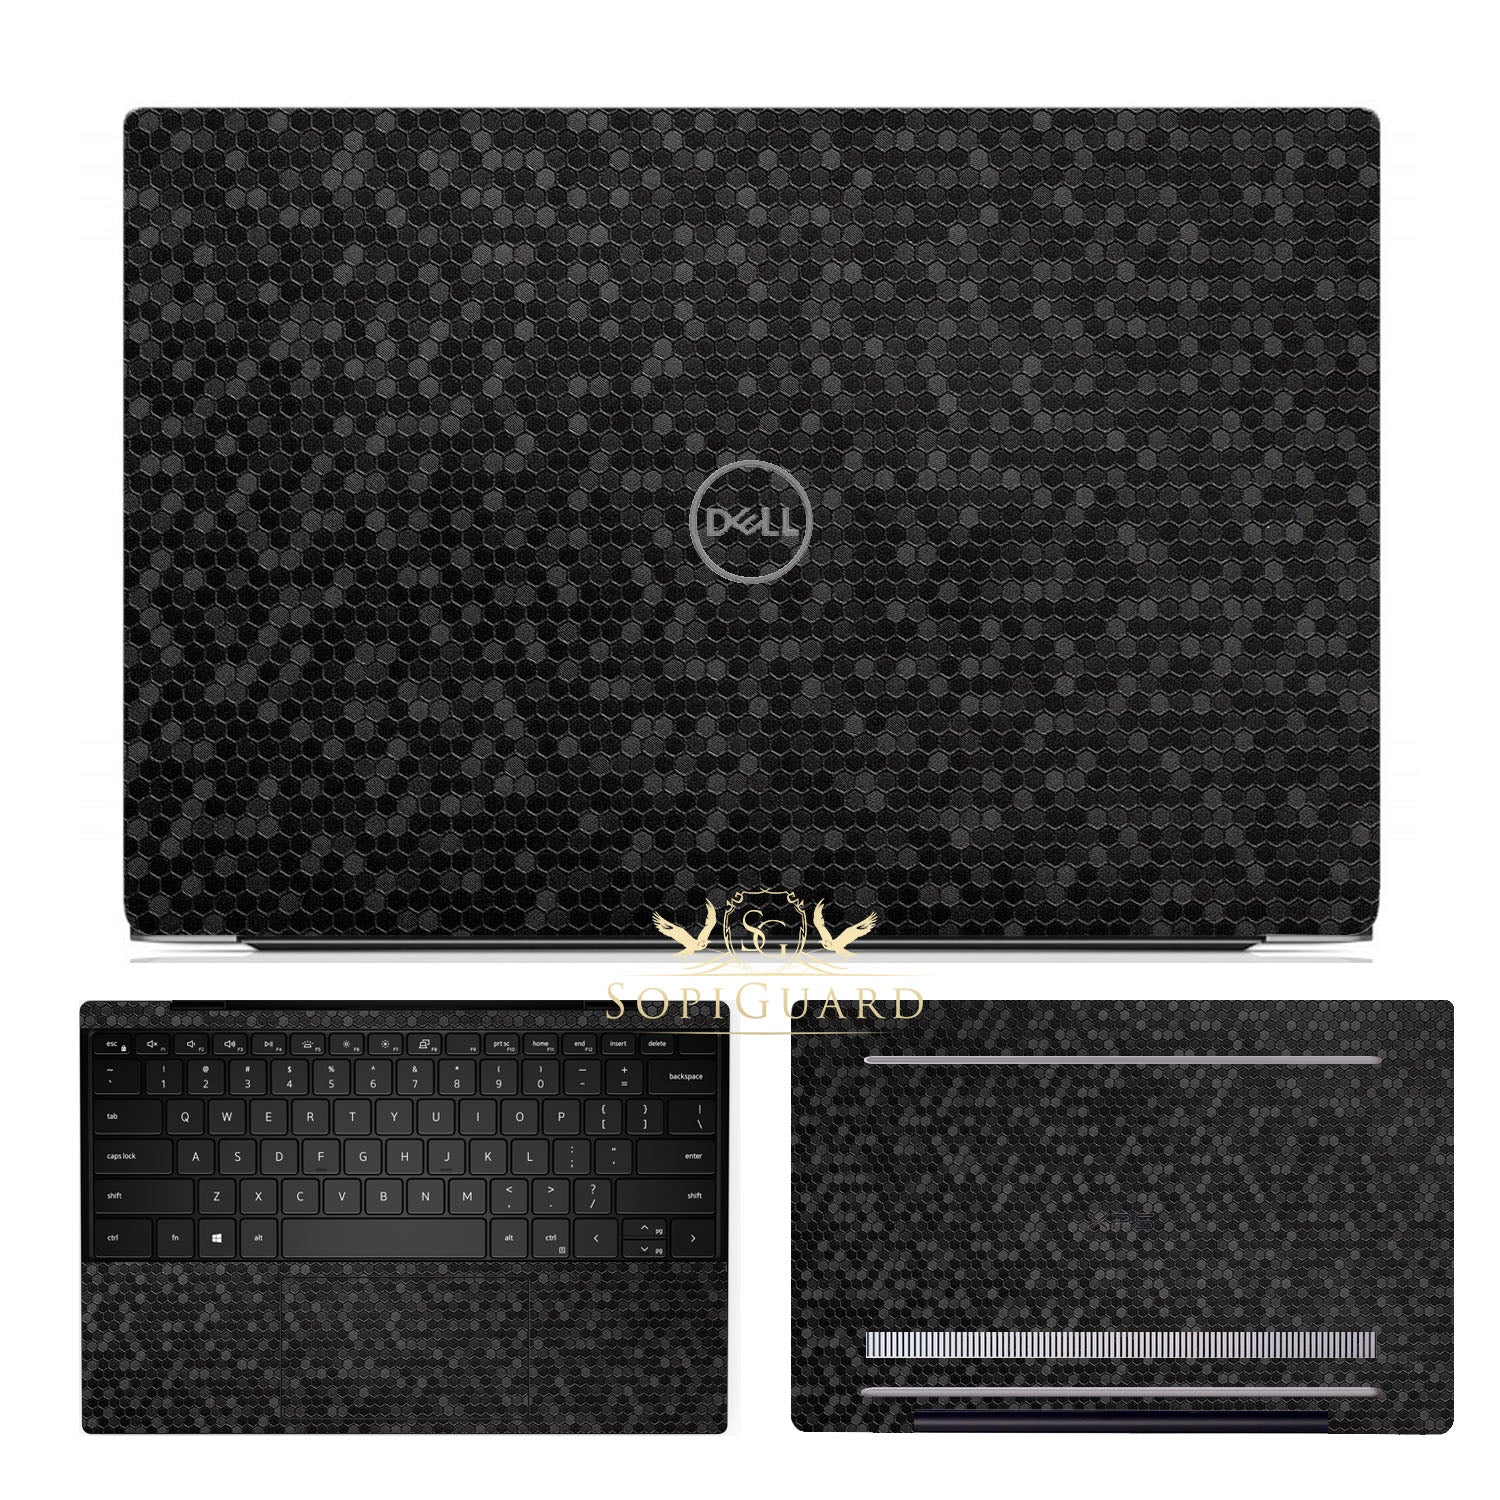 Dell XPS 15 (9500) sticker skin